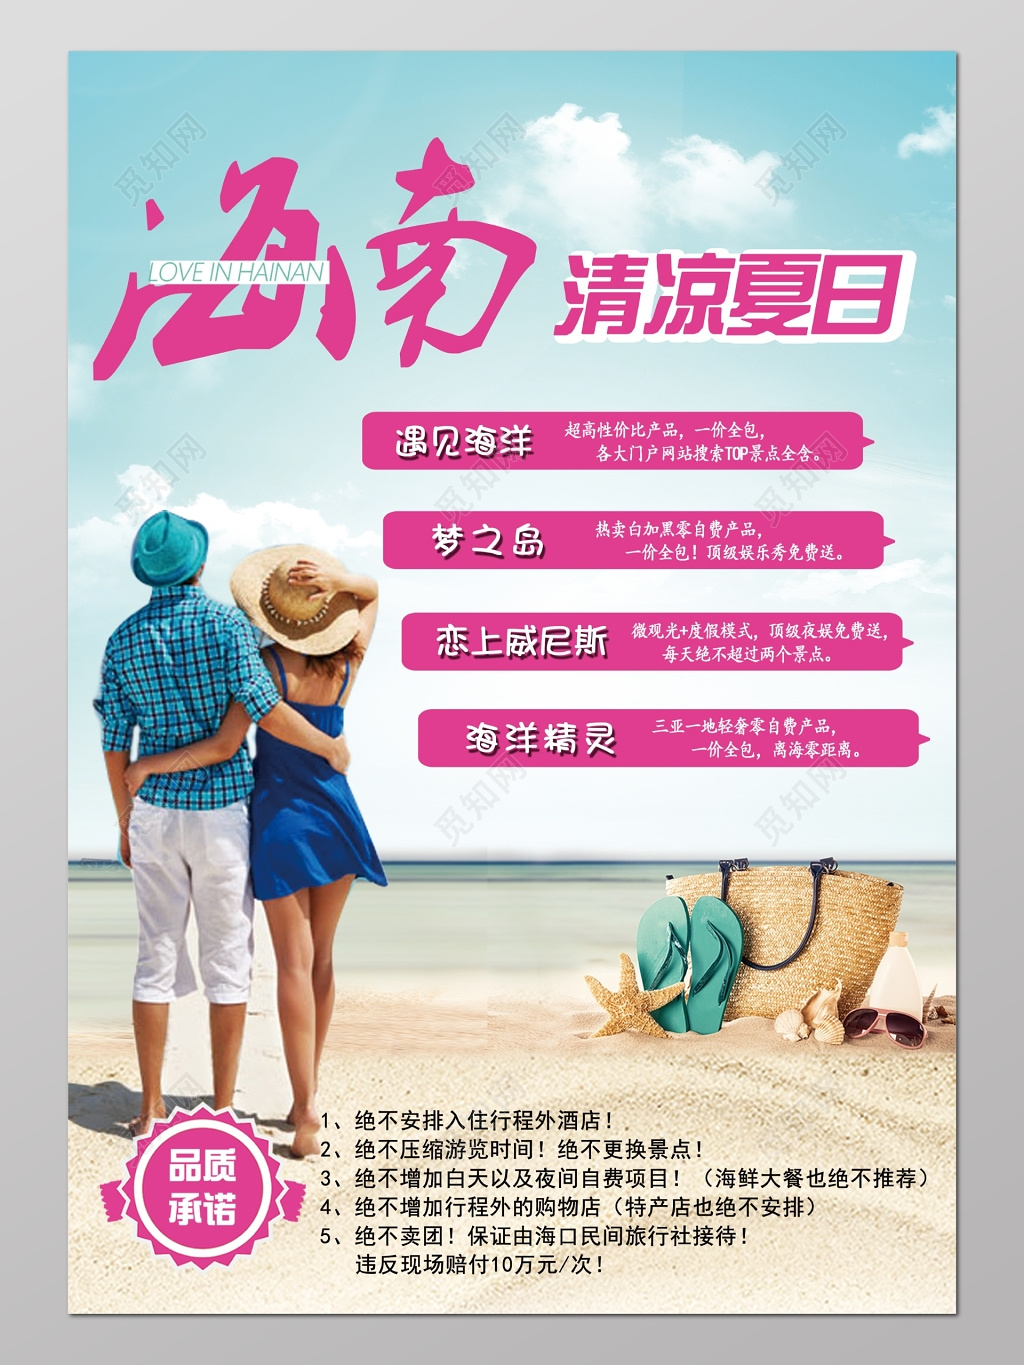 海南夏日海滩风景广告宣传海报设计模板